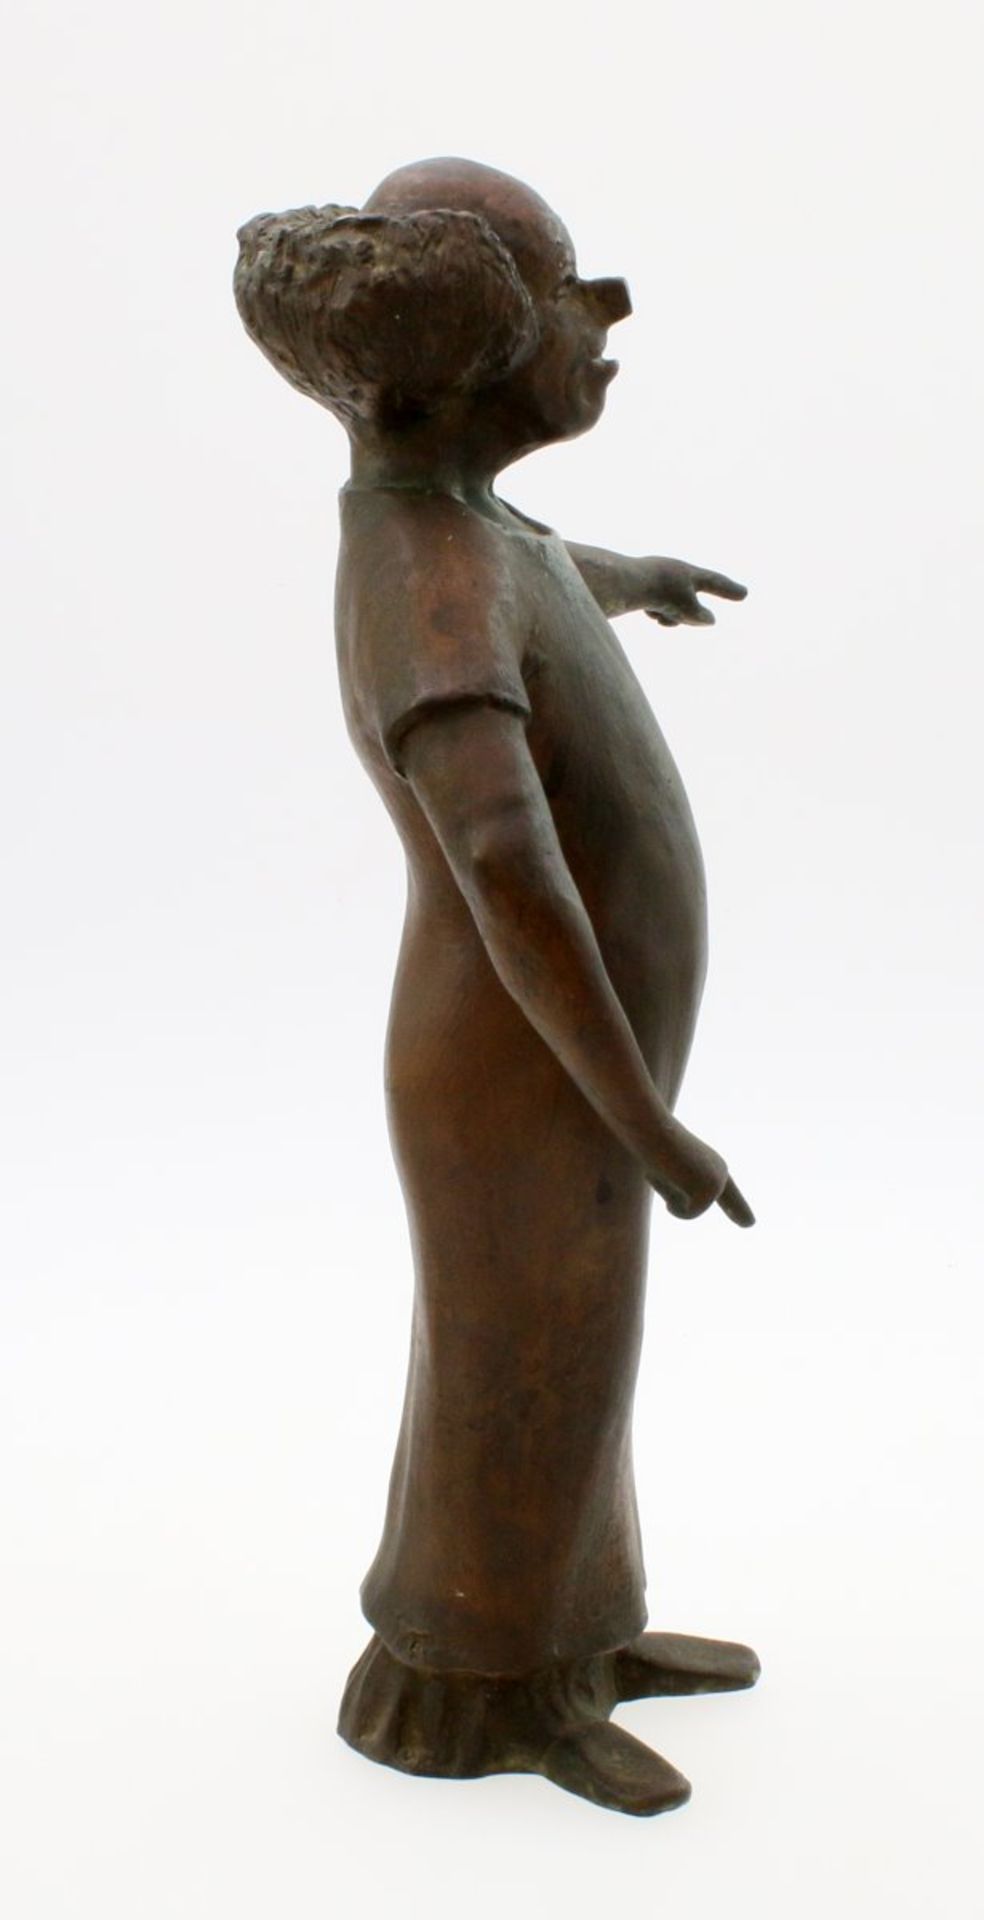 Bronzeskulptur "Charlie Rivel" - Kurt Moger (1926-1982) Schwerer Bronzeguss des bekannten Clowns, - Bild 2 aus 4